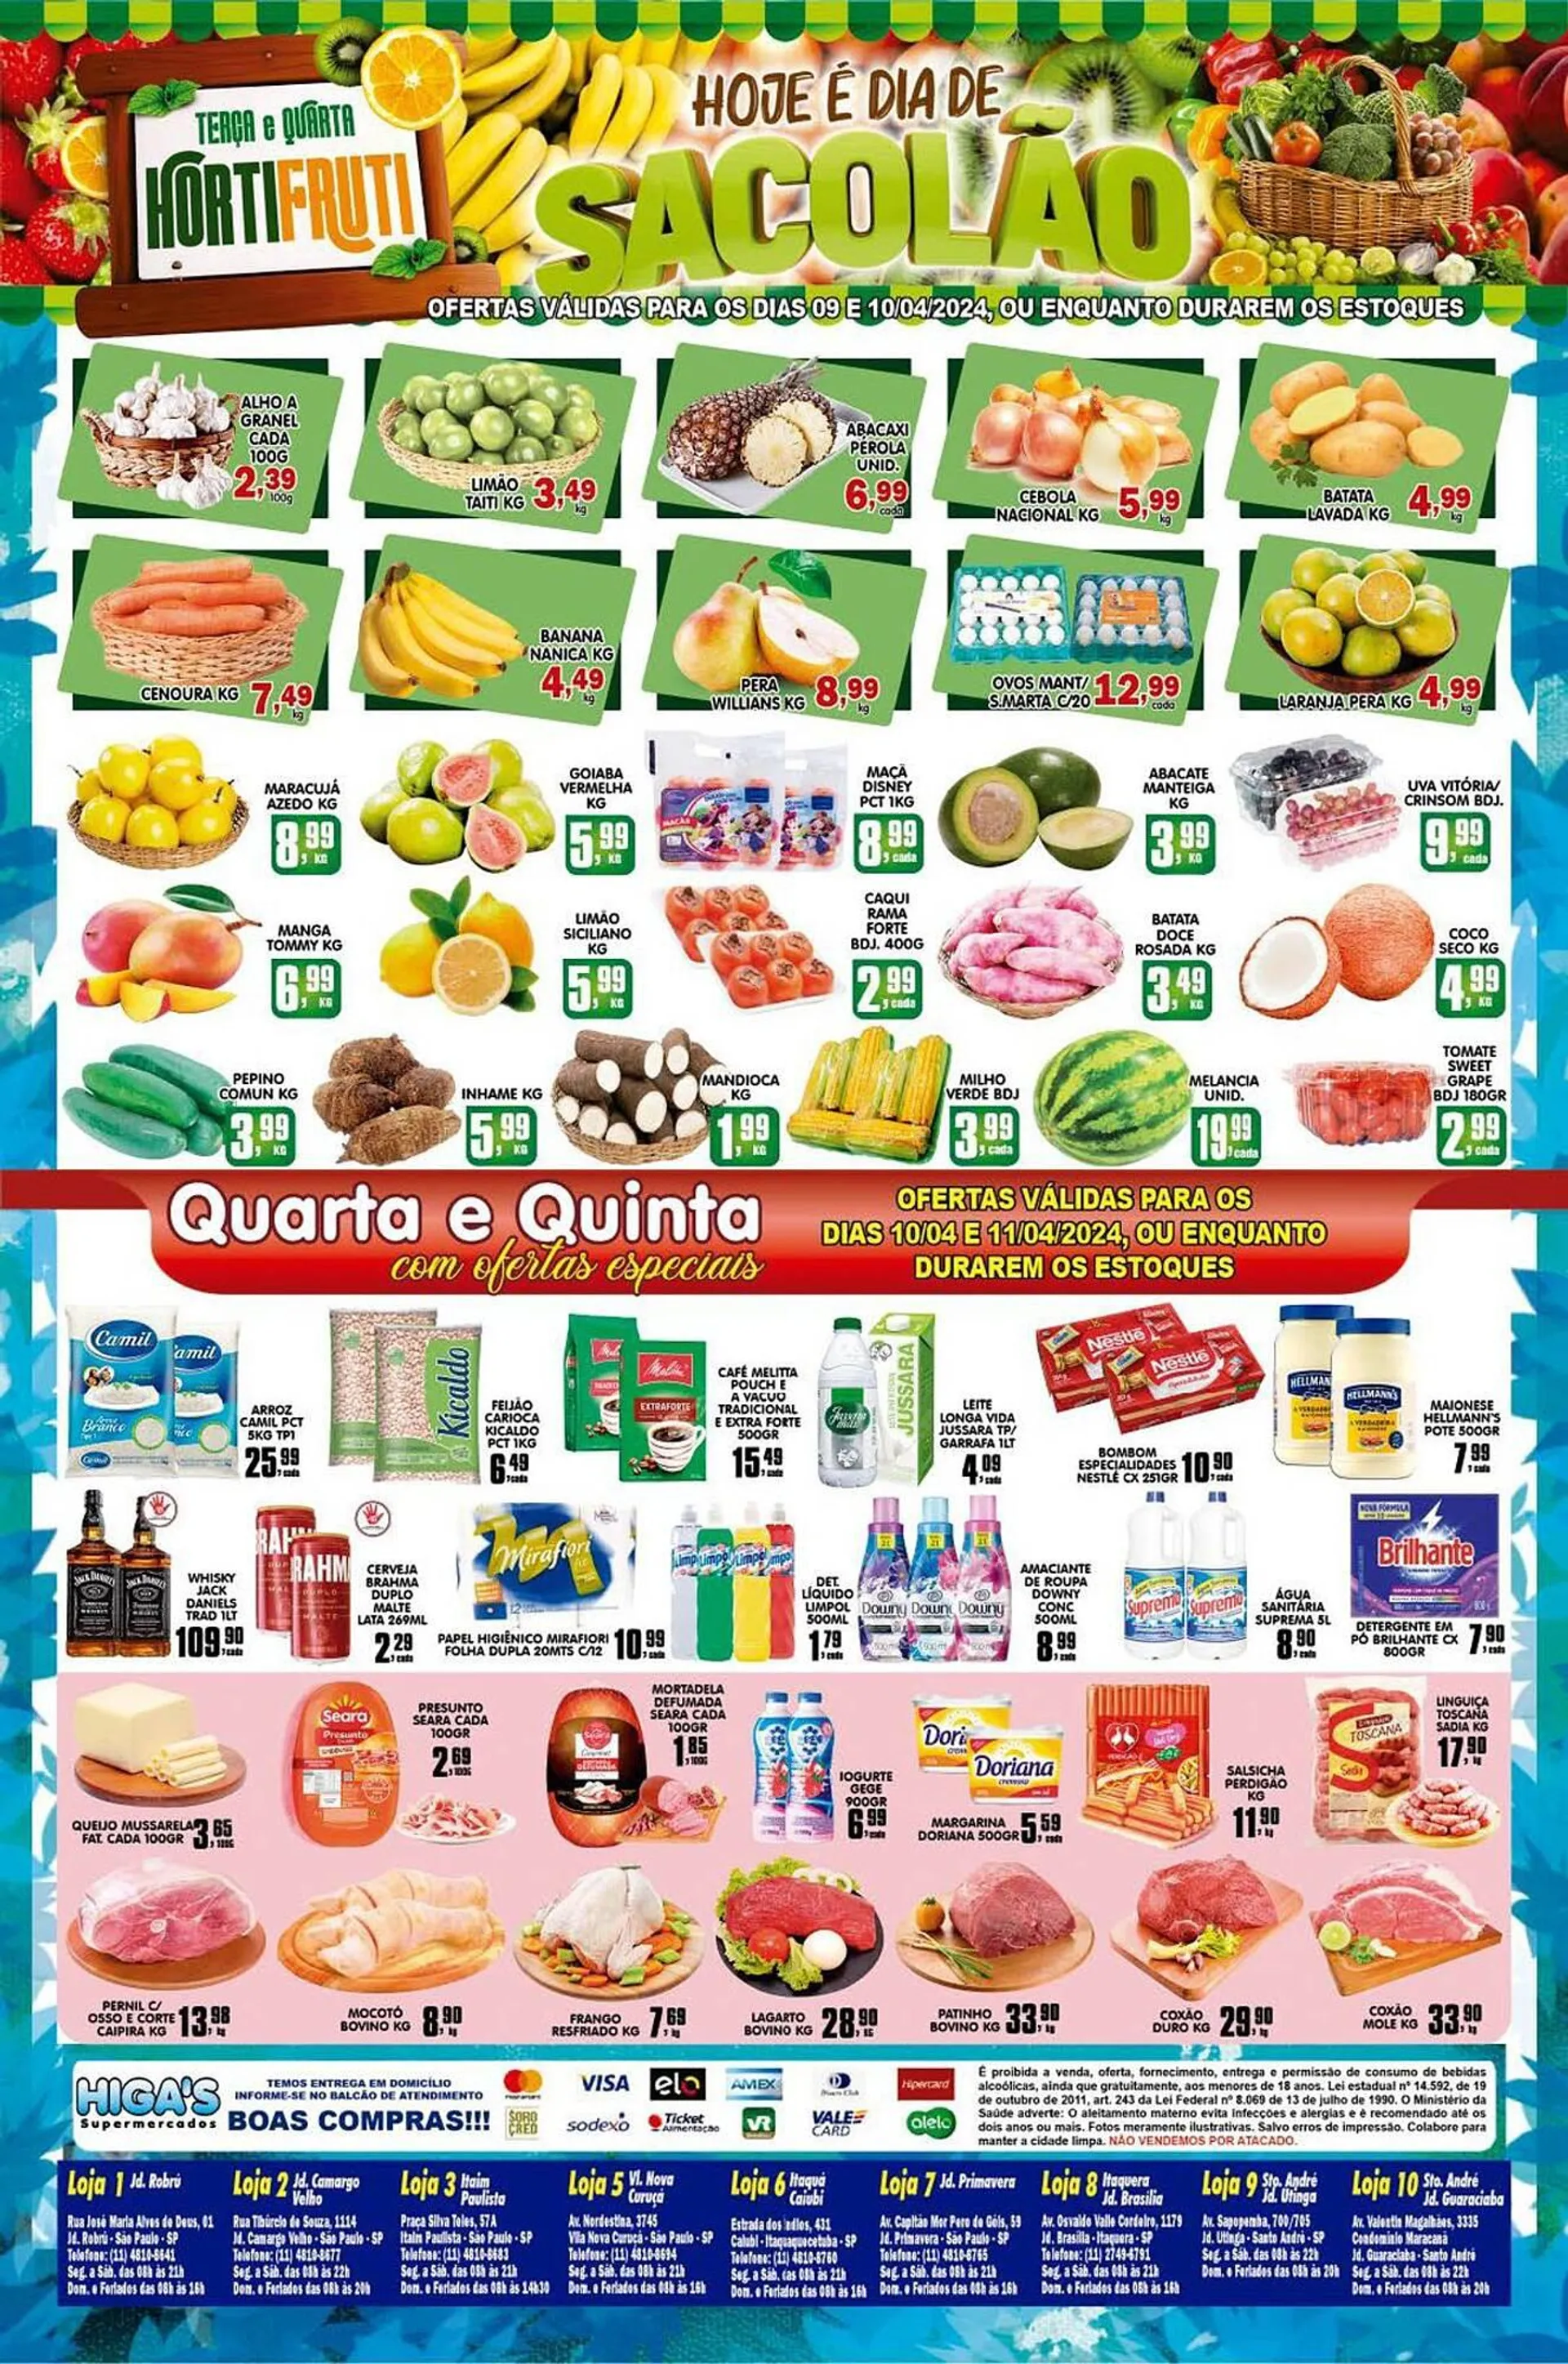 Encarte de Catálogo Higa's Supermercado 9 de abril até 16 de abril 2024 - Pagina 4